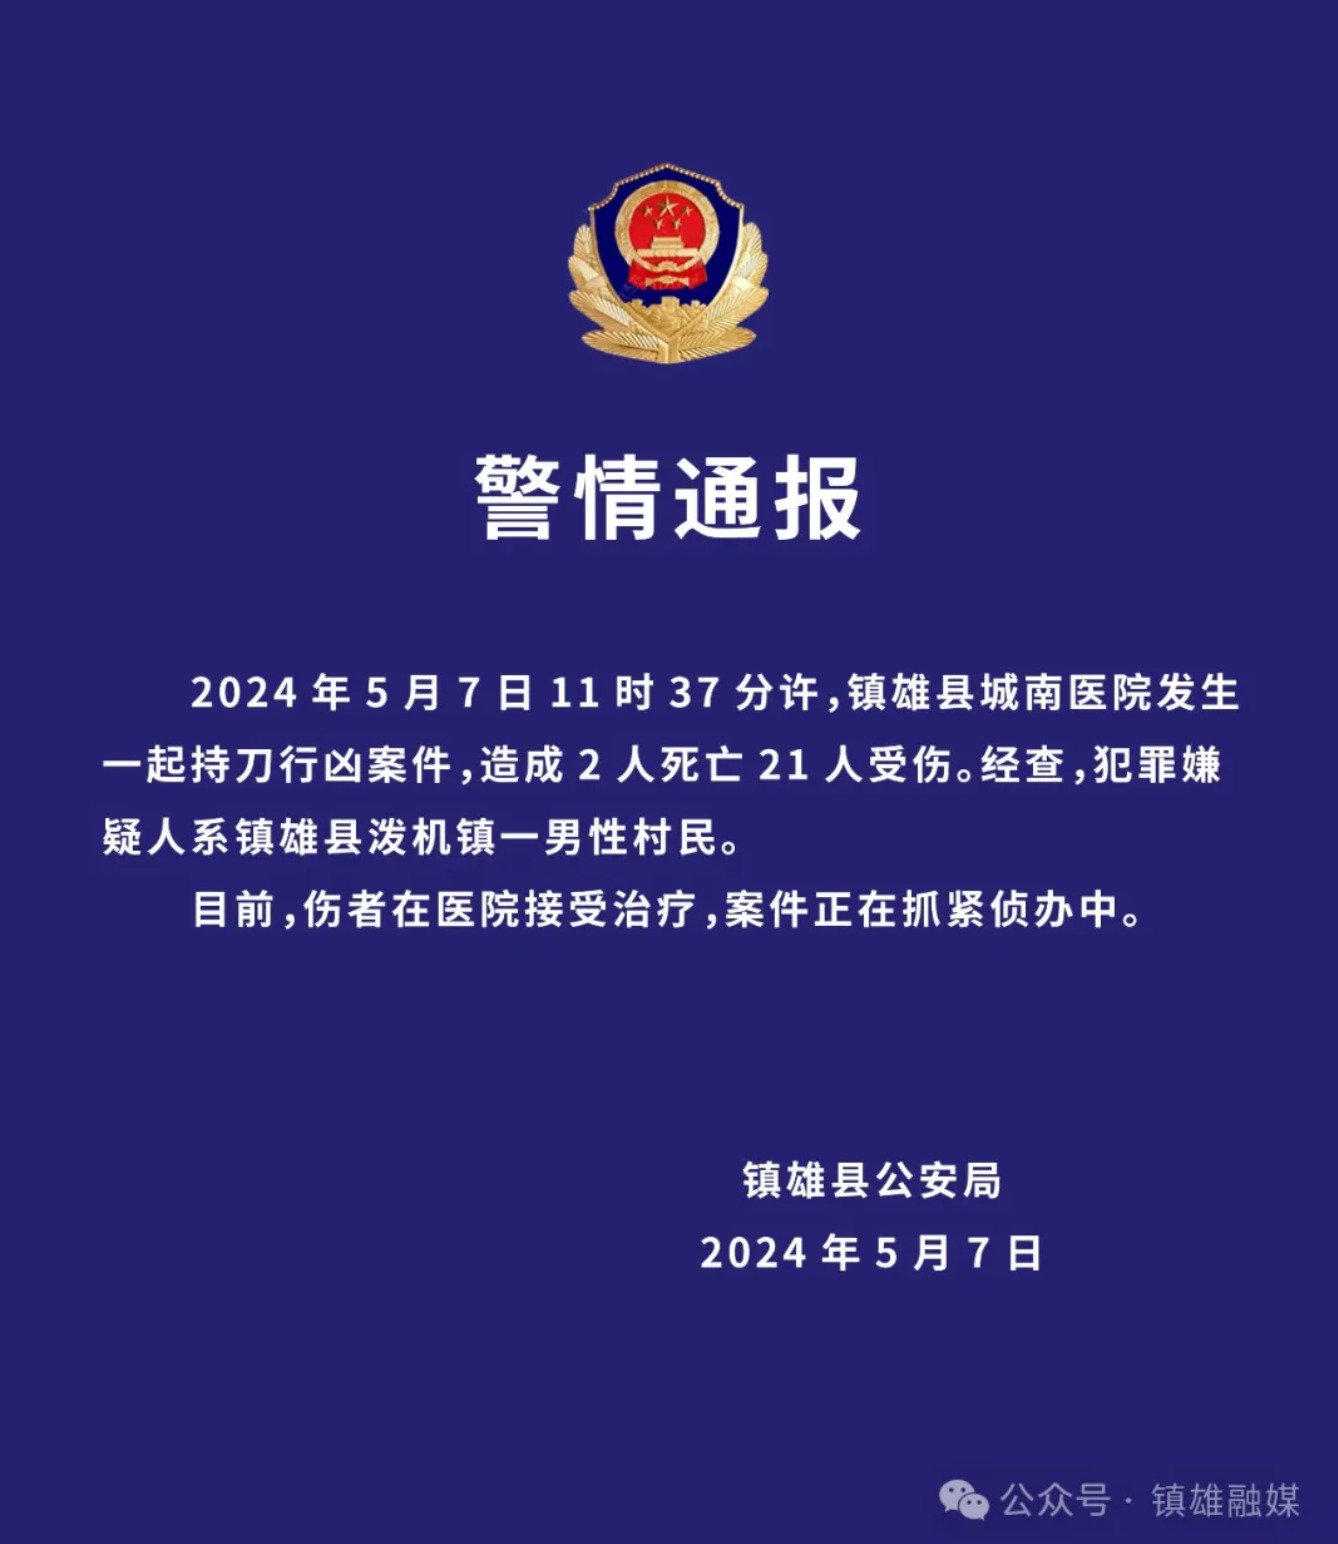 云南镇雄县公安局发布警情通报证实此案。取自镇雄县委宣传部旗下媒体帐号